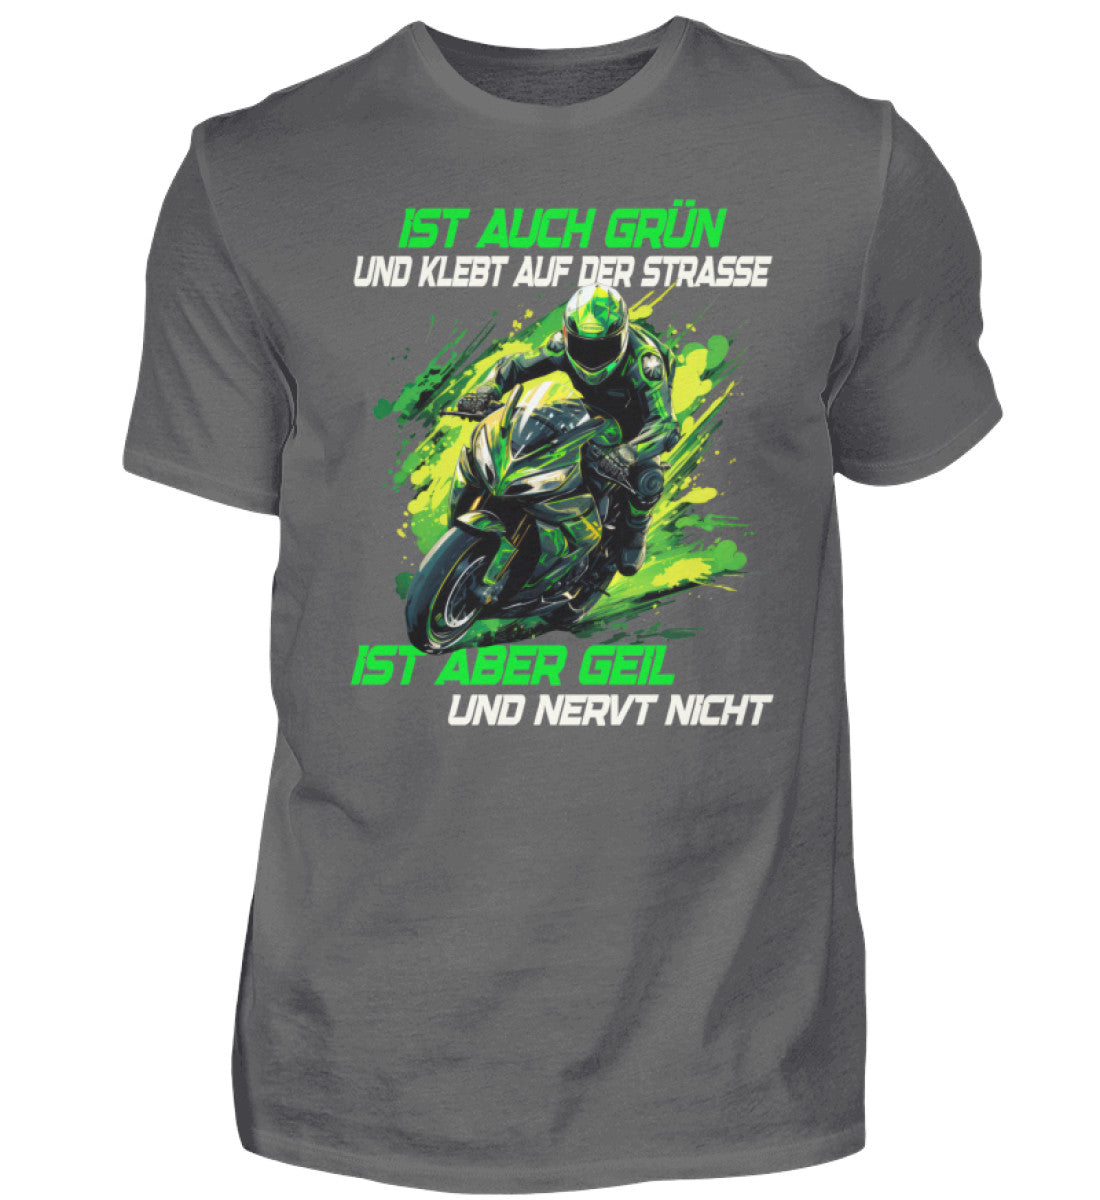 Ein T-Shirt für Motorradfahrer von Wingbikers mit dem Aufdruck, Ist auch grün und klebt auf der Straße, ist aber geil und nervt nicht, in dunkelgrau.